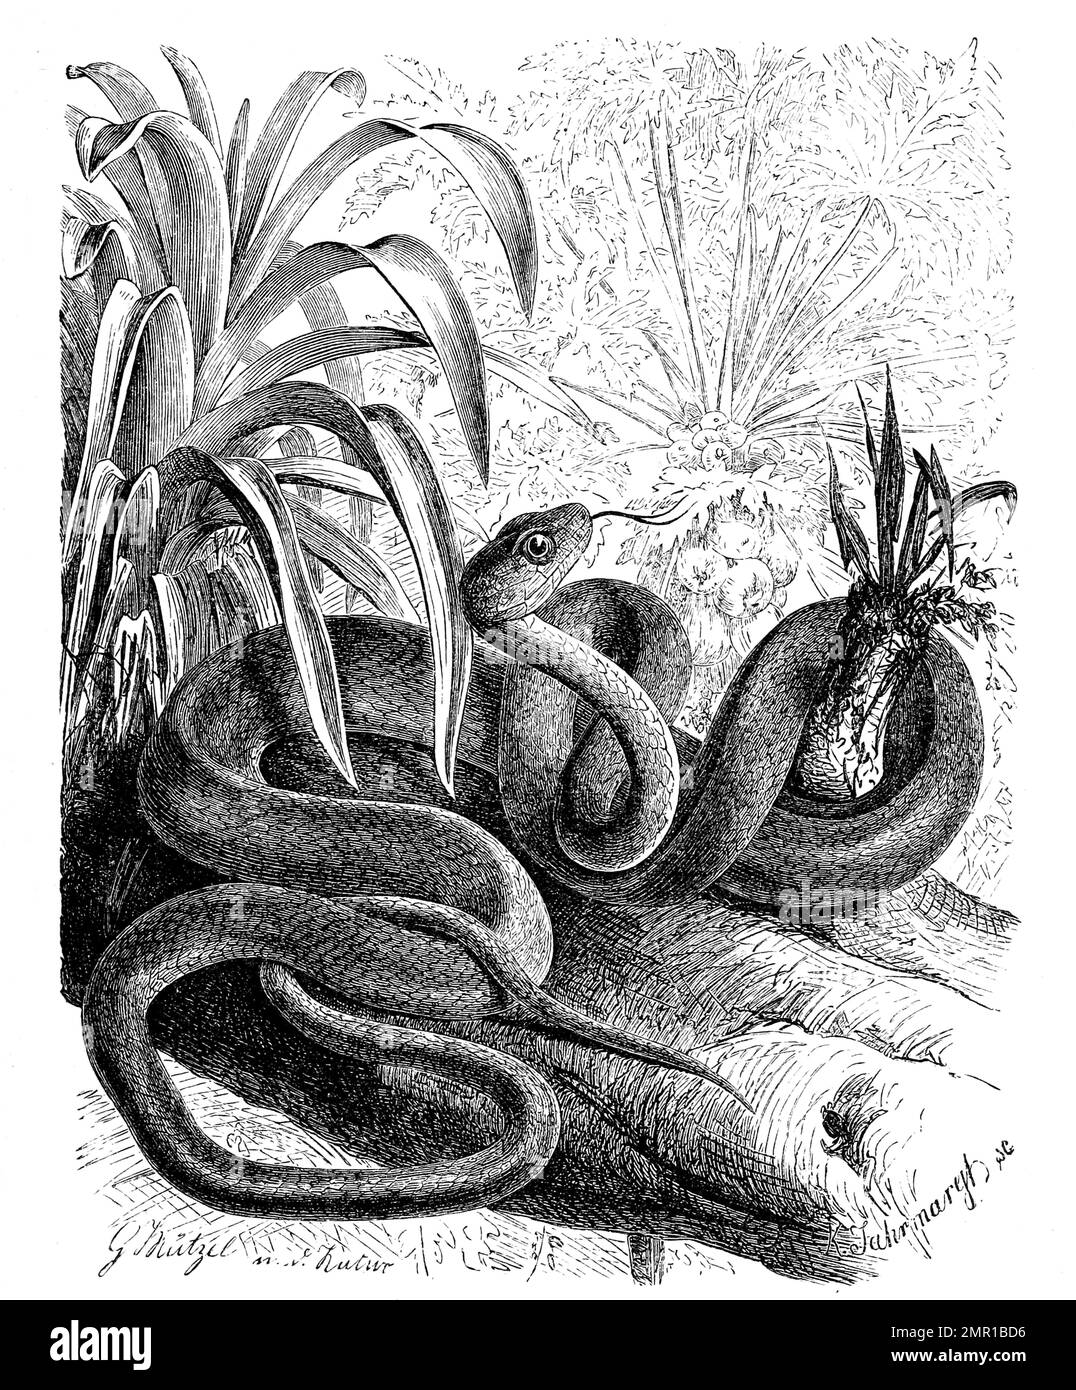 Reptilien, Sipo, Chironius exoletus, Historisch, digital restaurierte Reproduktion von einer Vorlage aus dem 19. Hundert Stockfoto